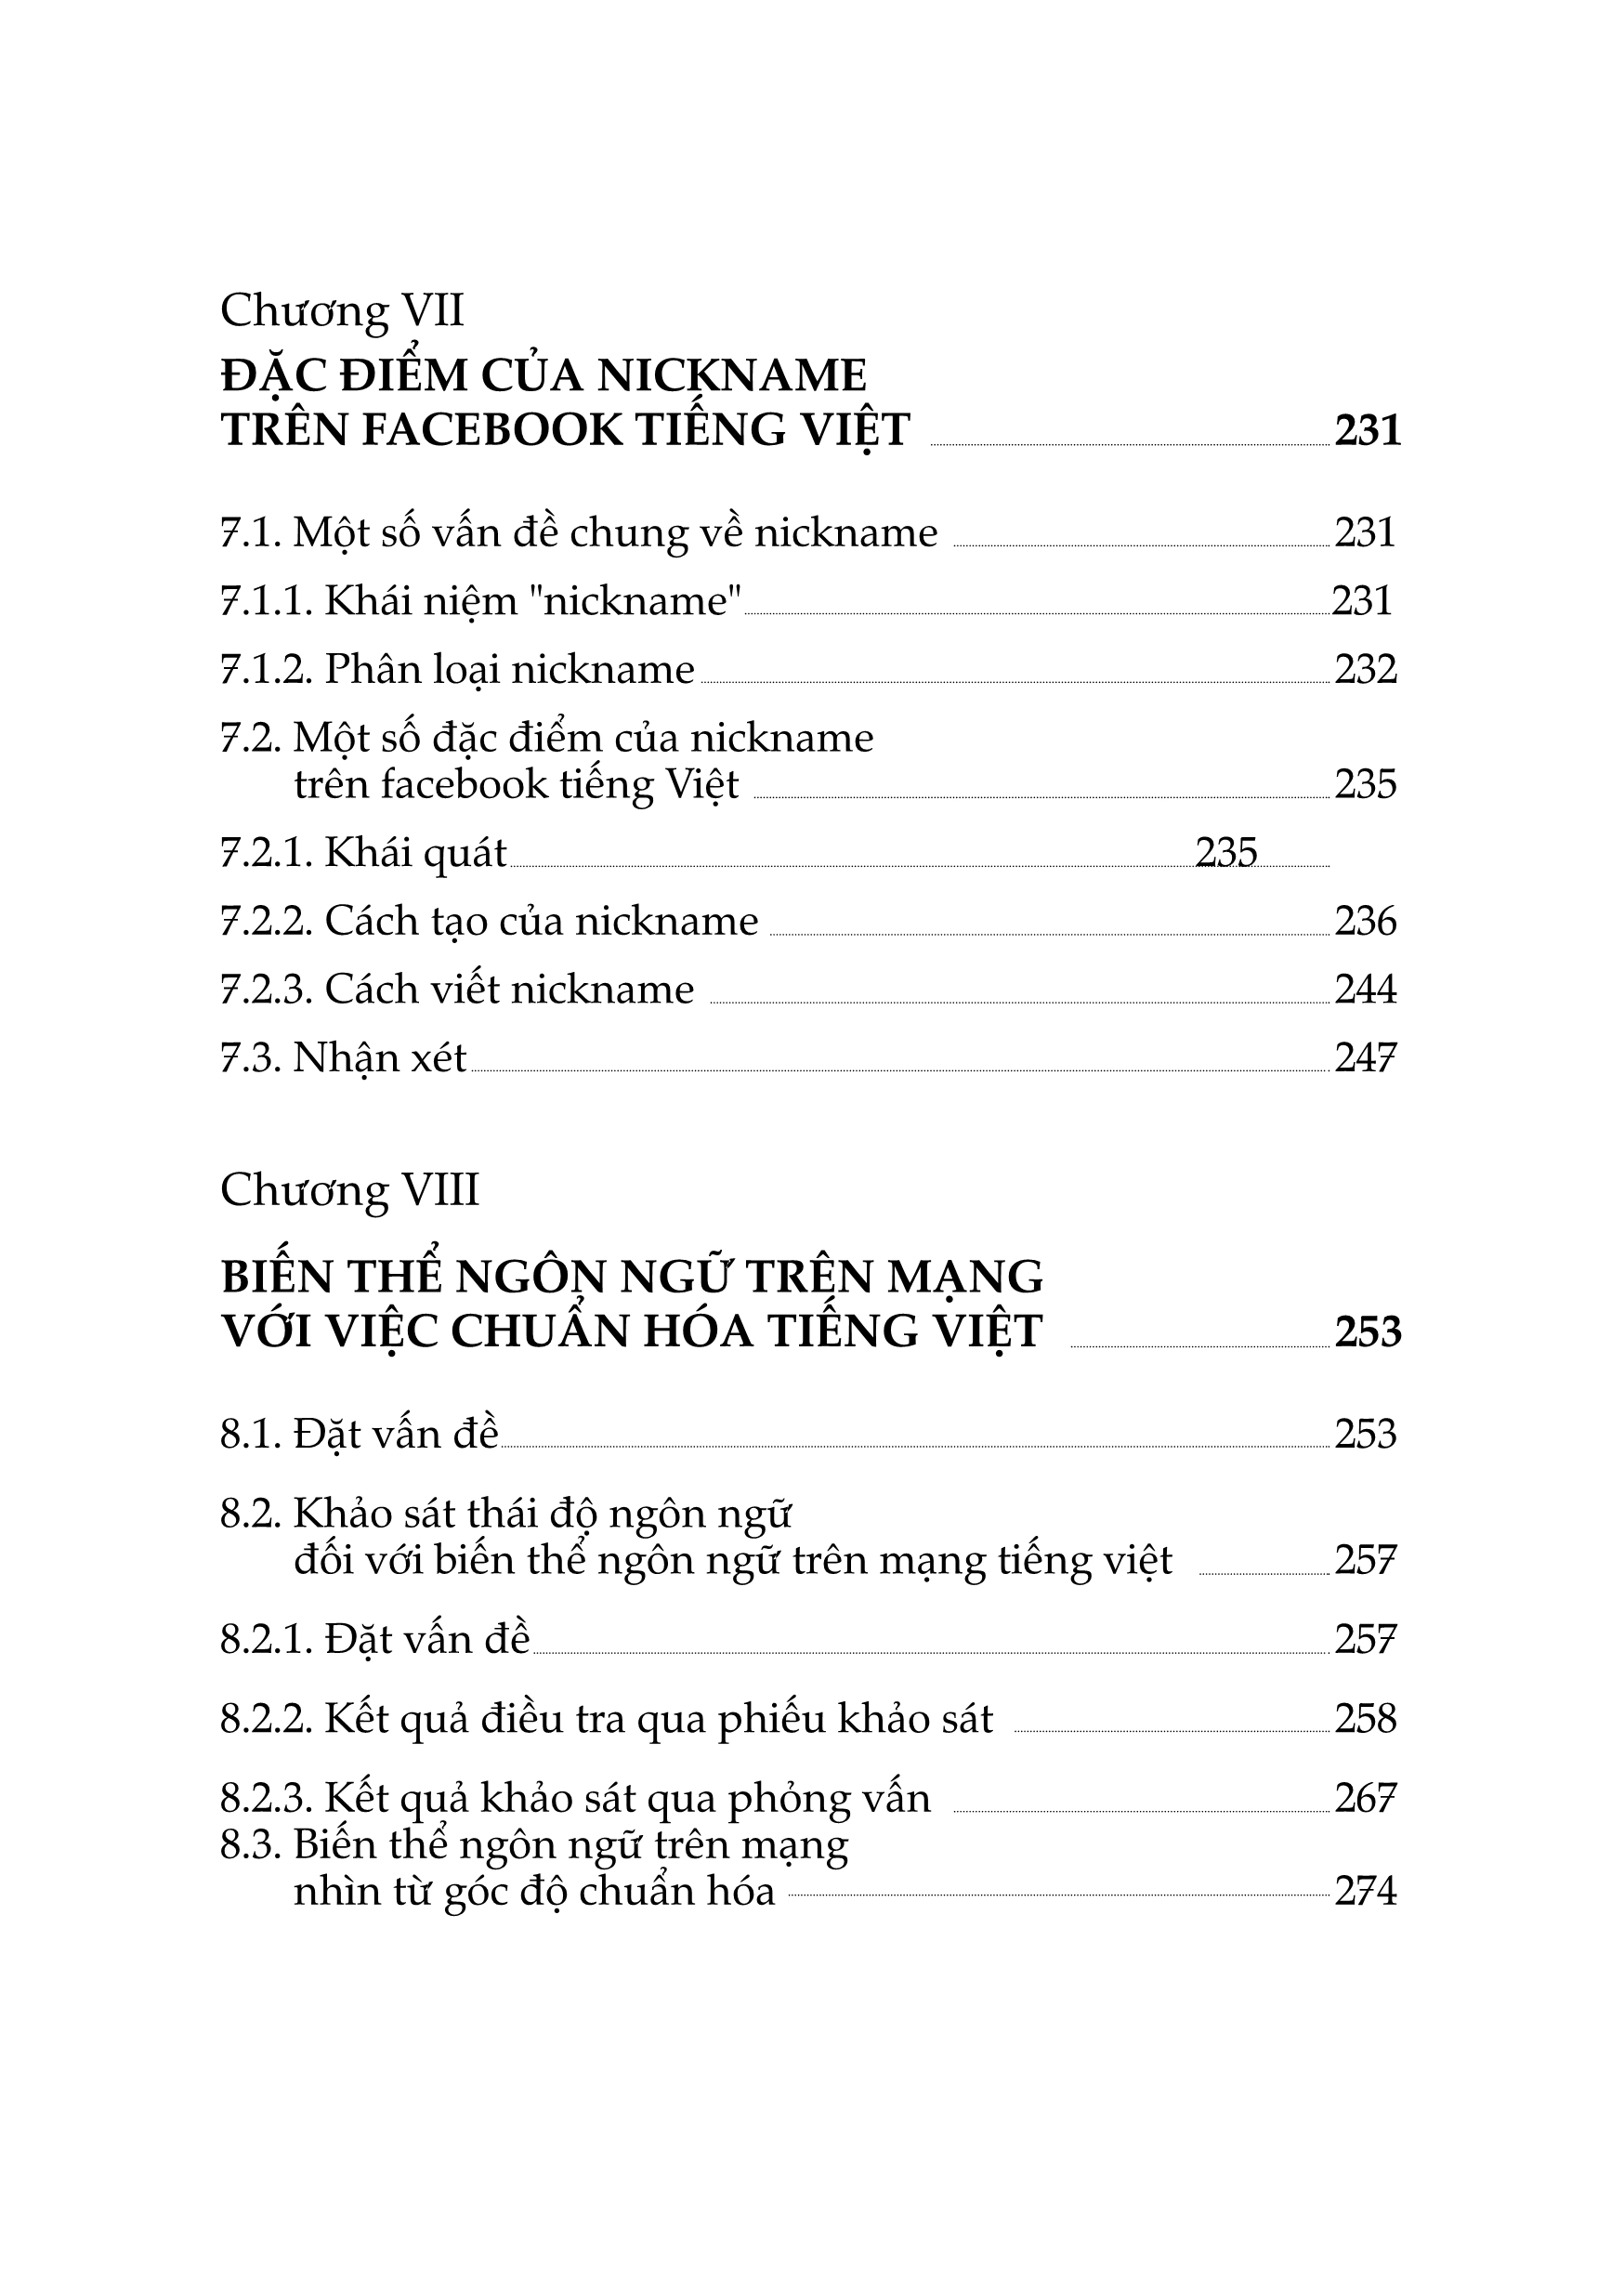 Ngôn Ngữ Mạng - Biến Thể Ngôn Ngữ Trên Mạng Tiếng Việt